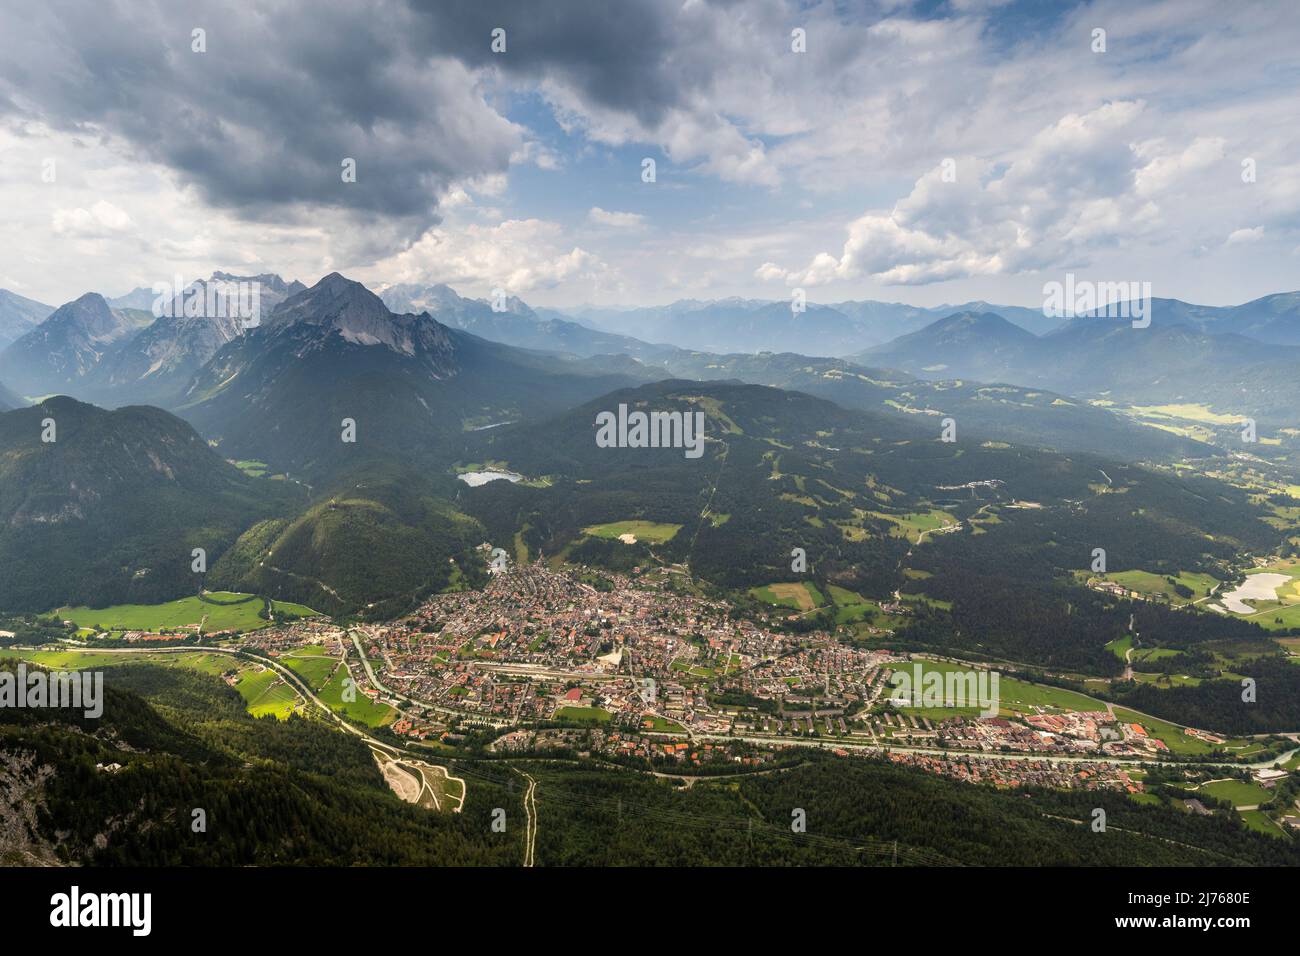 Vue depuis le Viererspitze (2054m) sur le village de Mittenwald dans les Alpes bavaroises, au-dessus du marché, les montagnes Kranzberg, Lautersee et Wetterstein. Banque D'Images